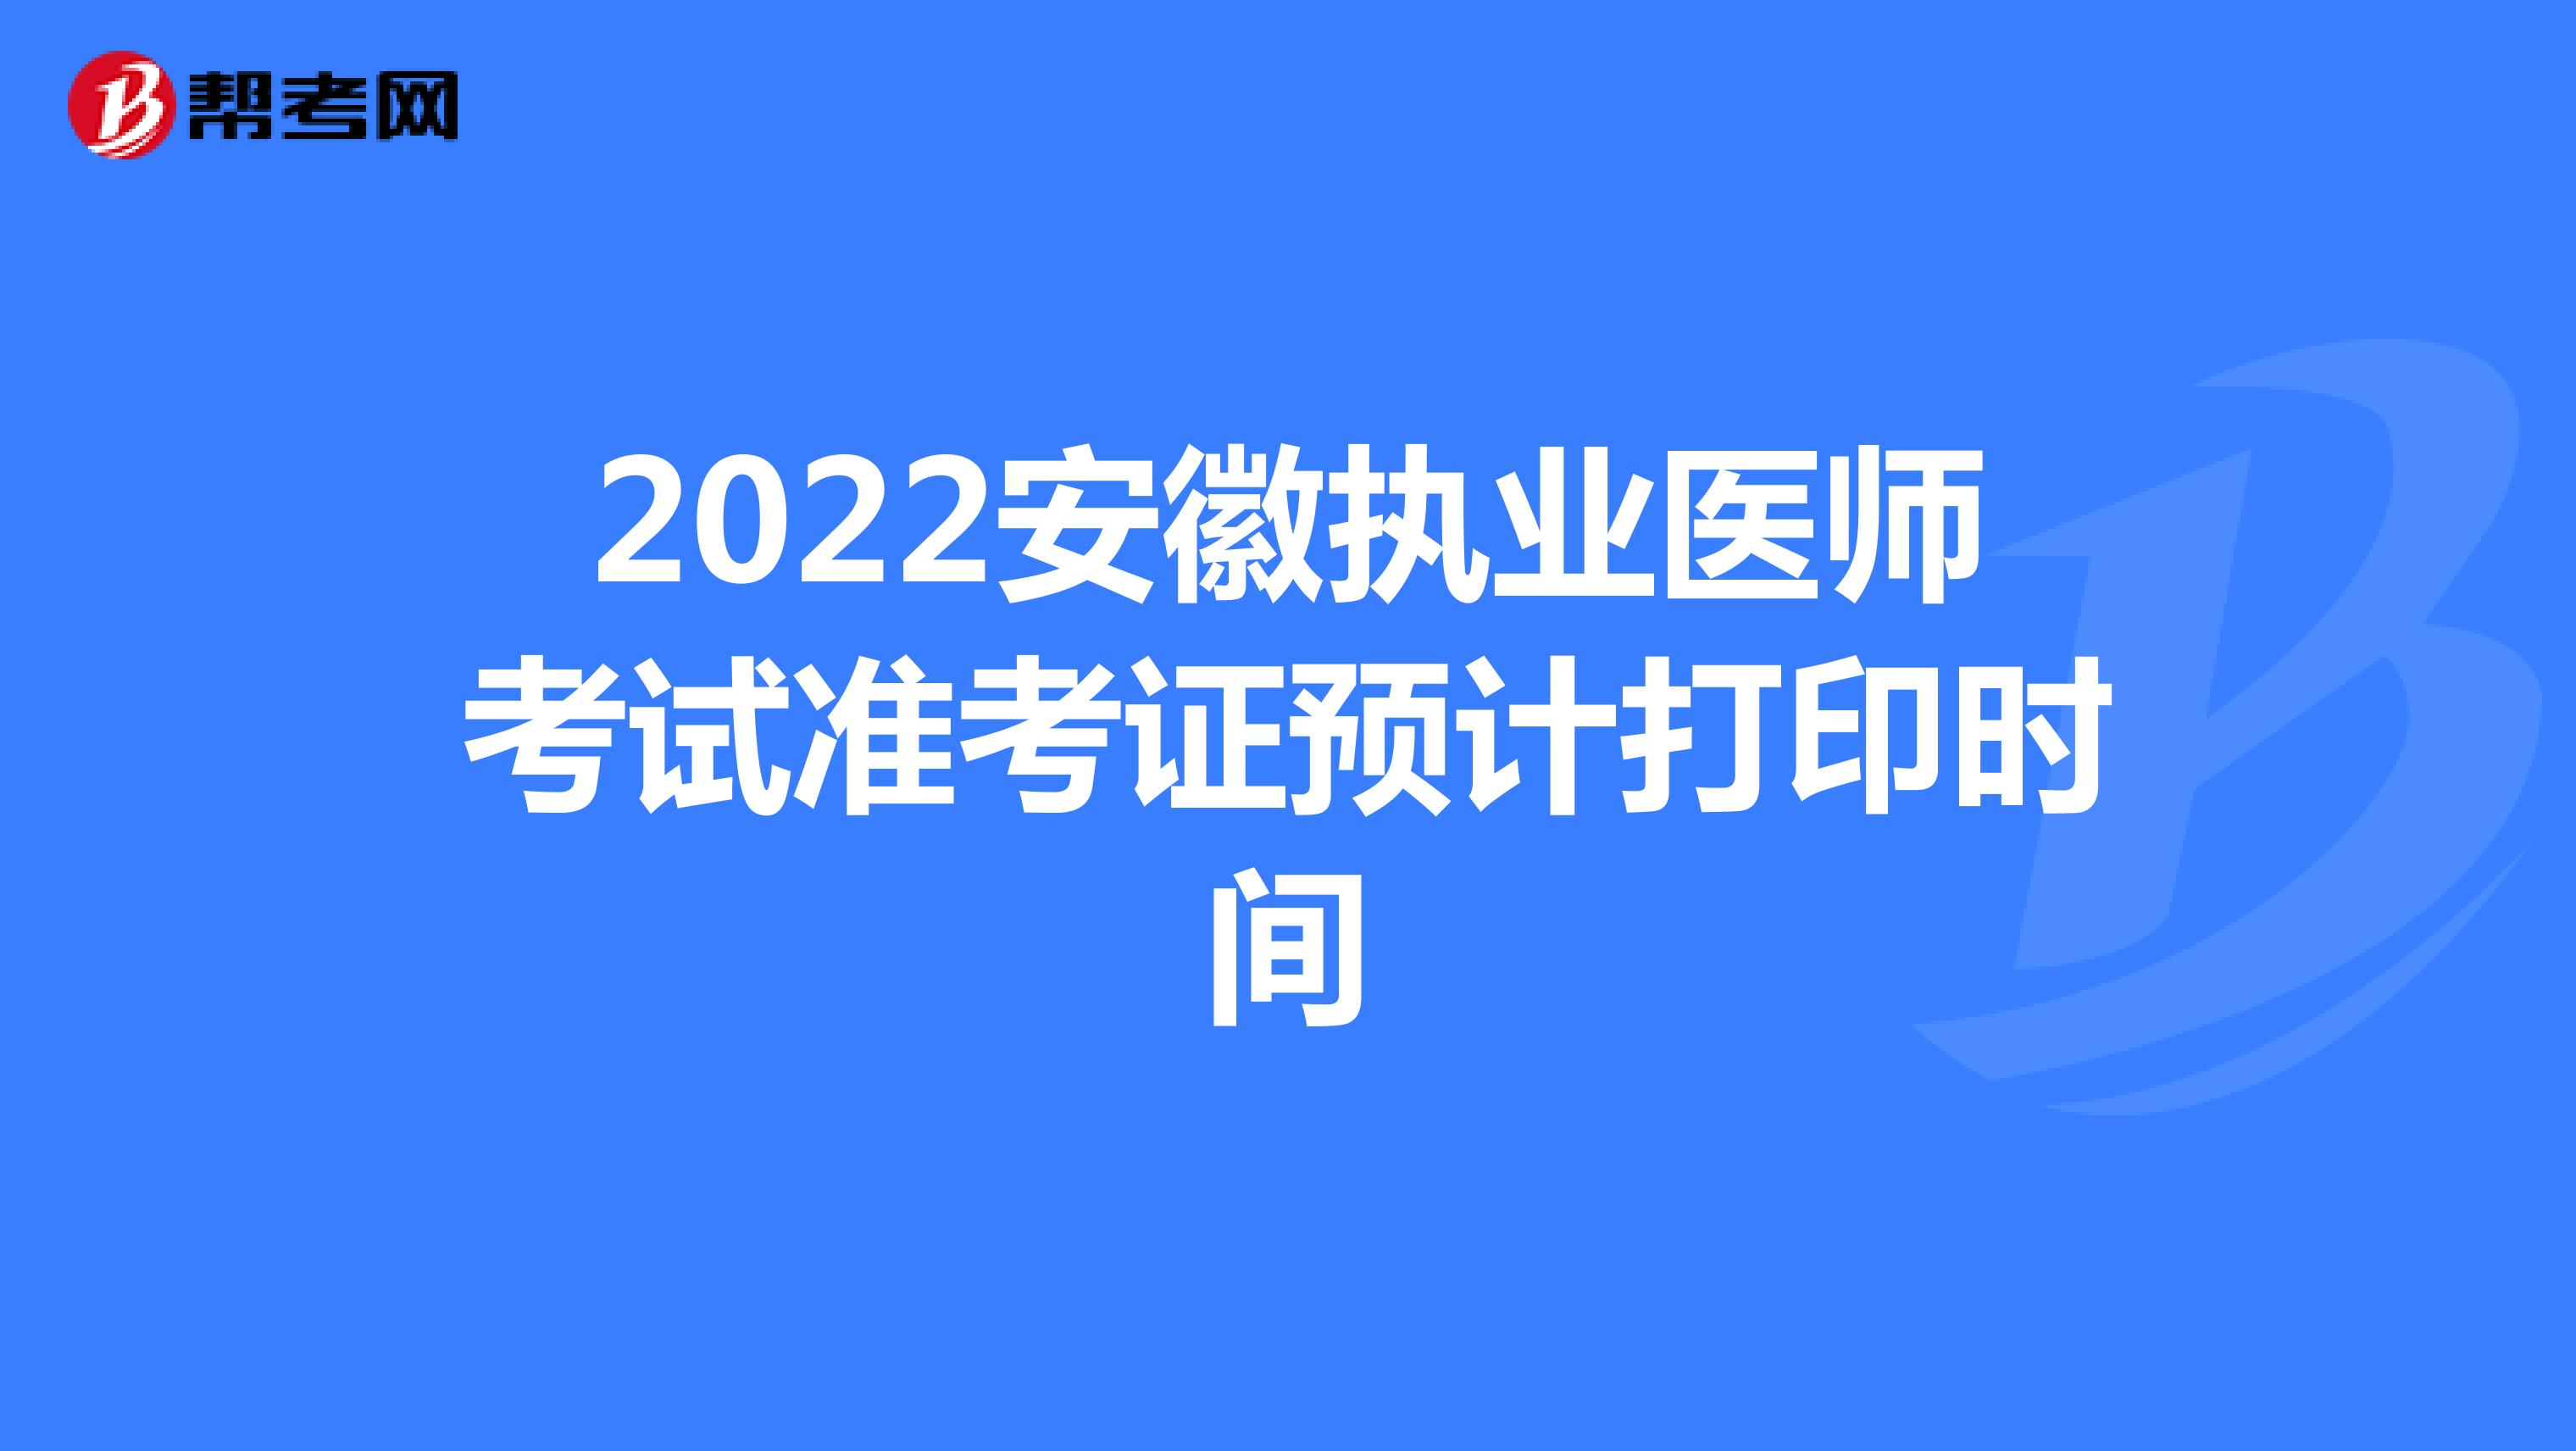 2022安徽执业医师考试准考证预计打印时间